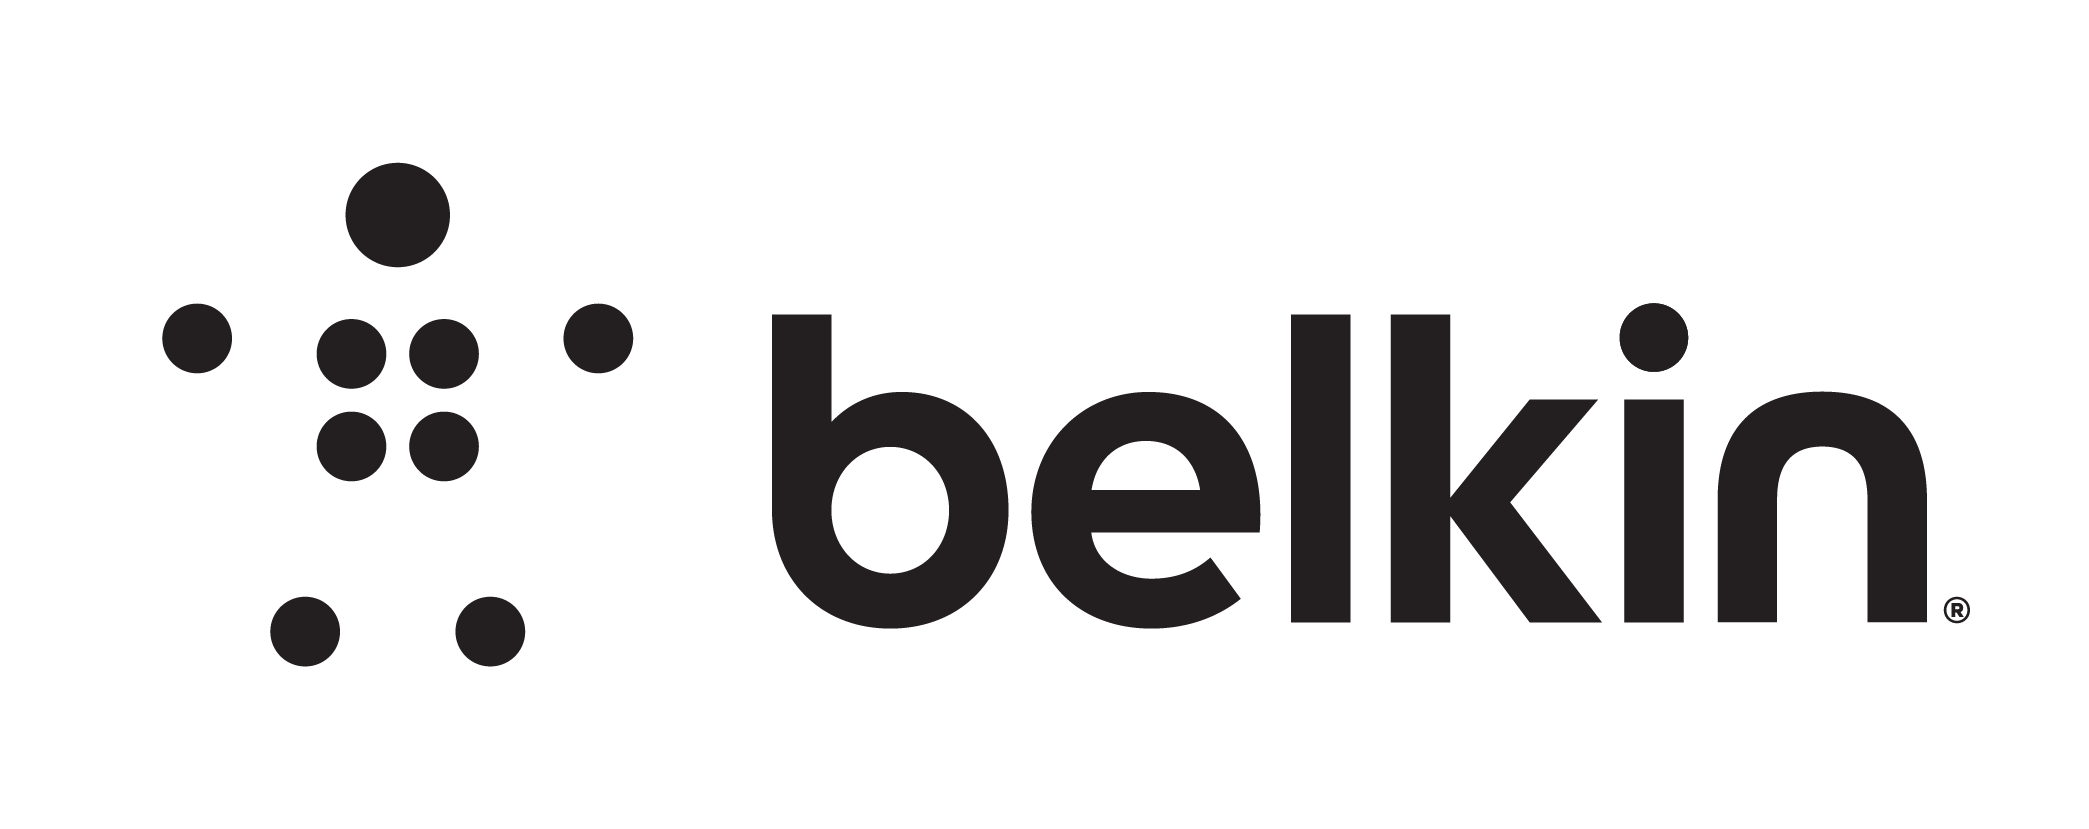 Belkin logo